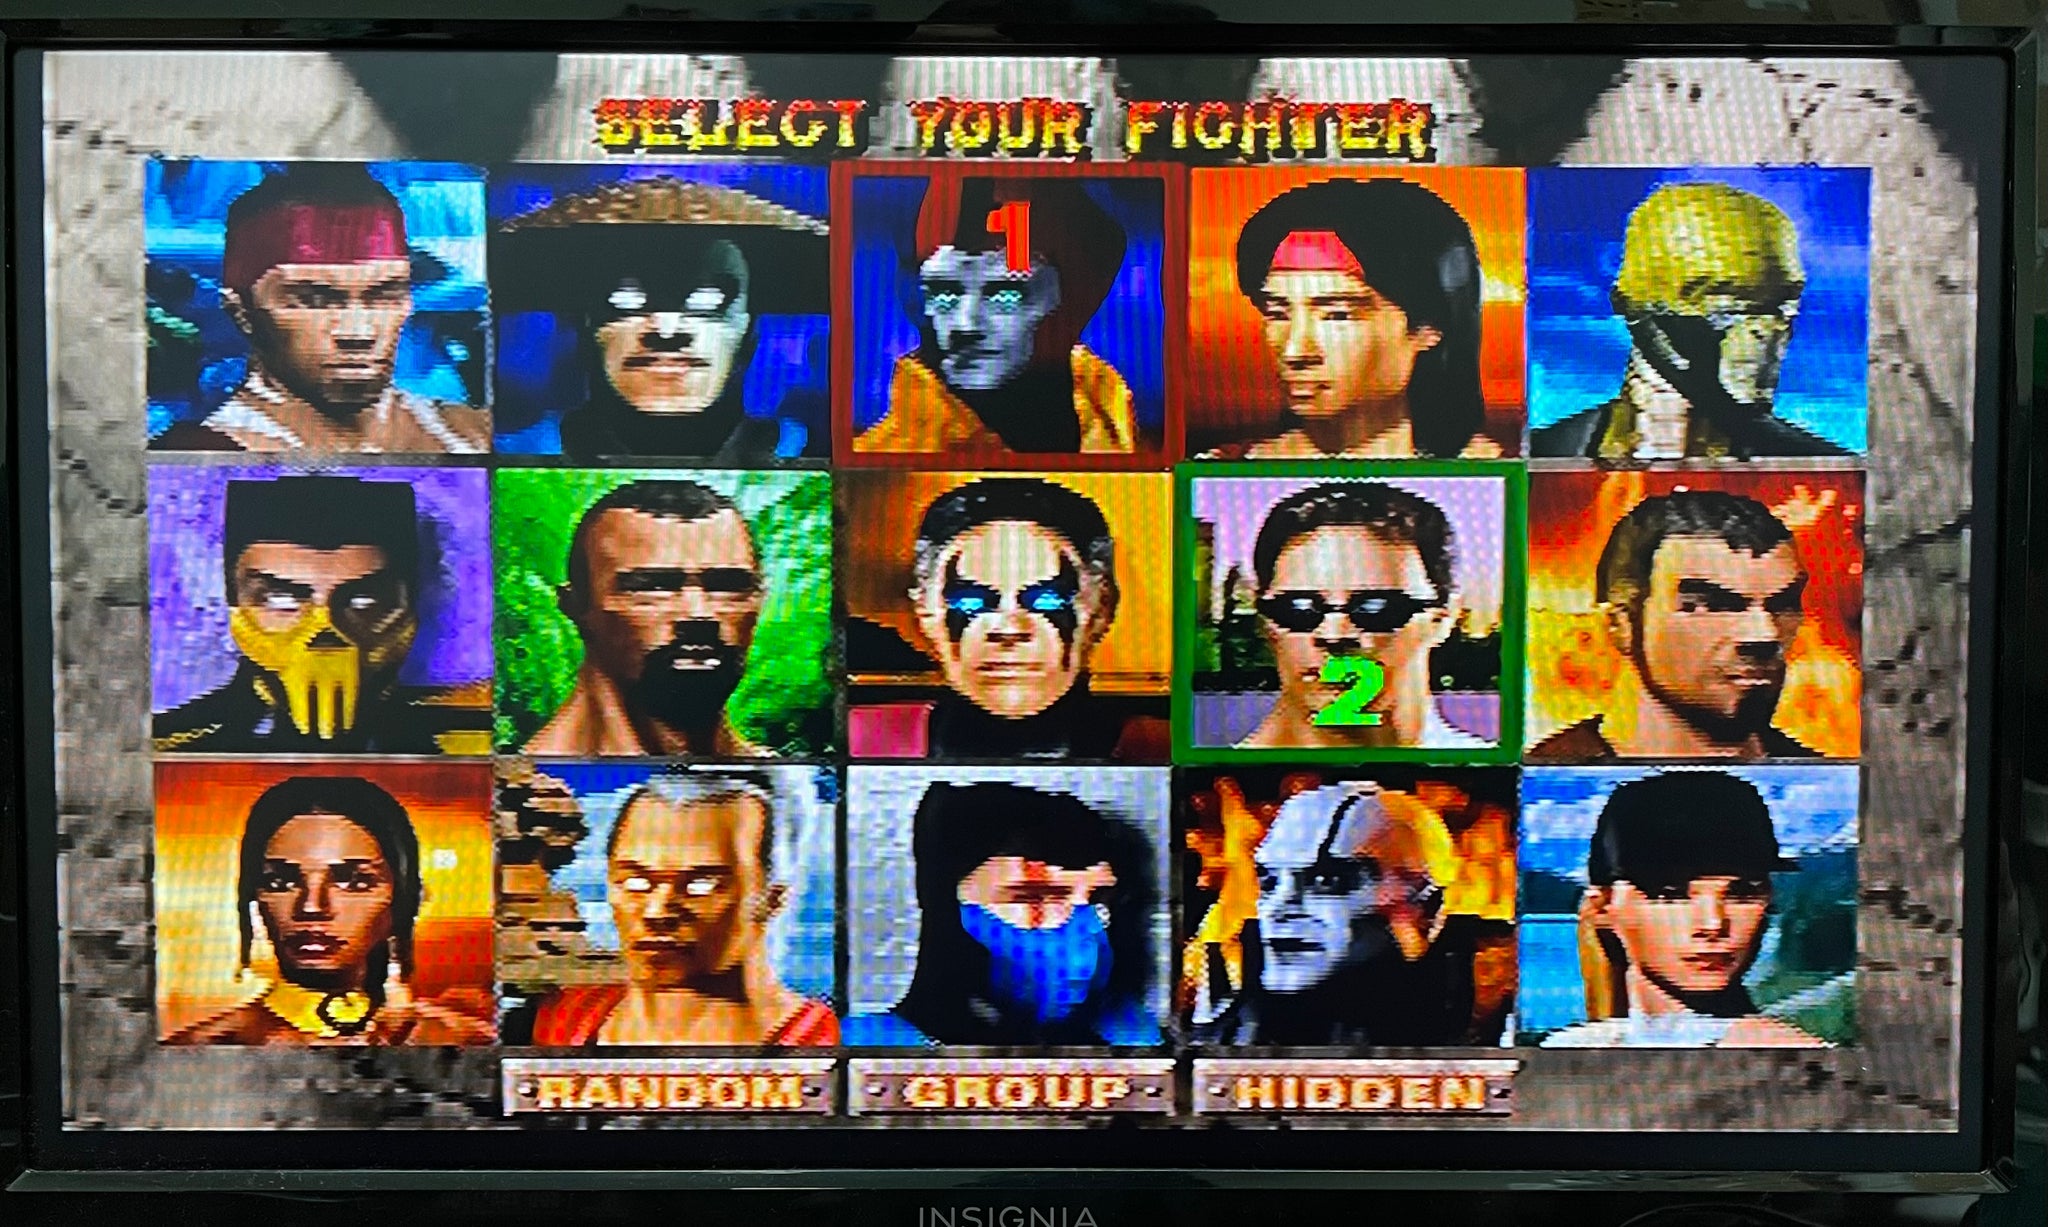 Mortal Kombat 4 MK4 (Nintendo 64 N64, 1998) Sealed!!!